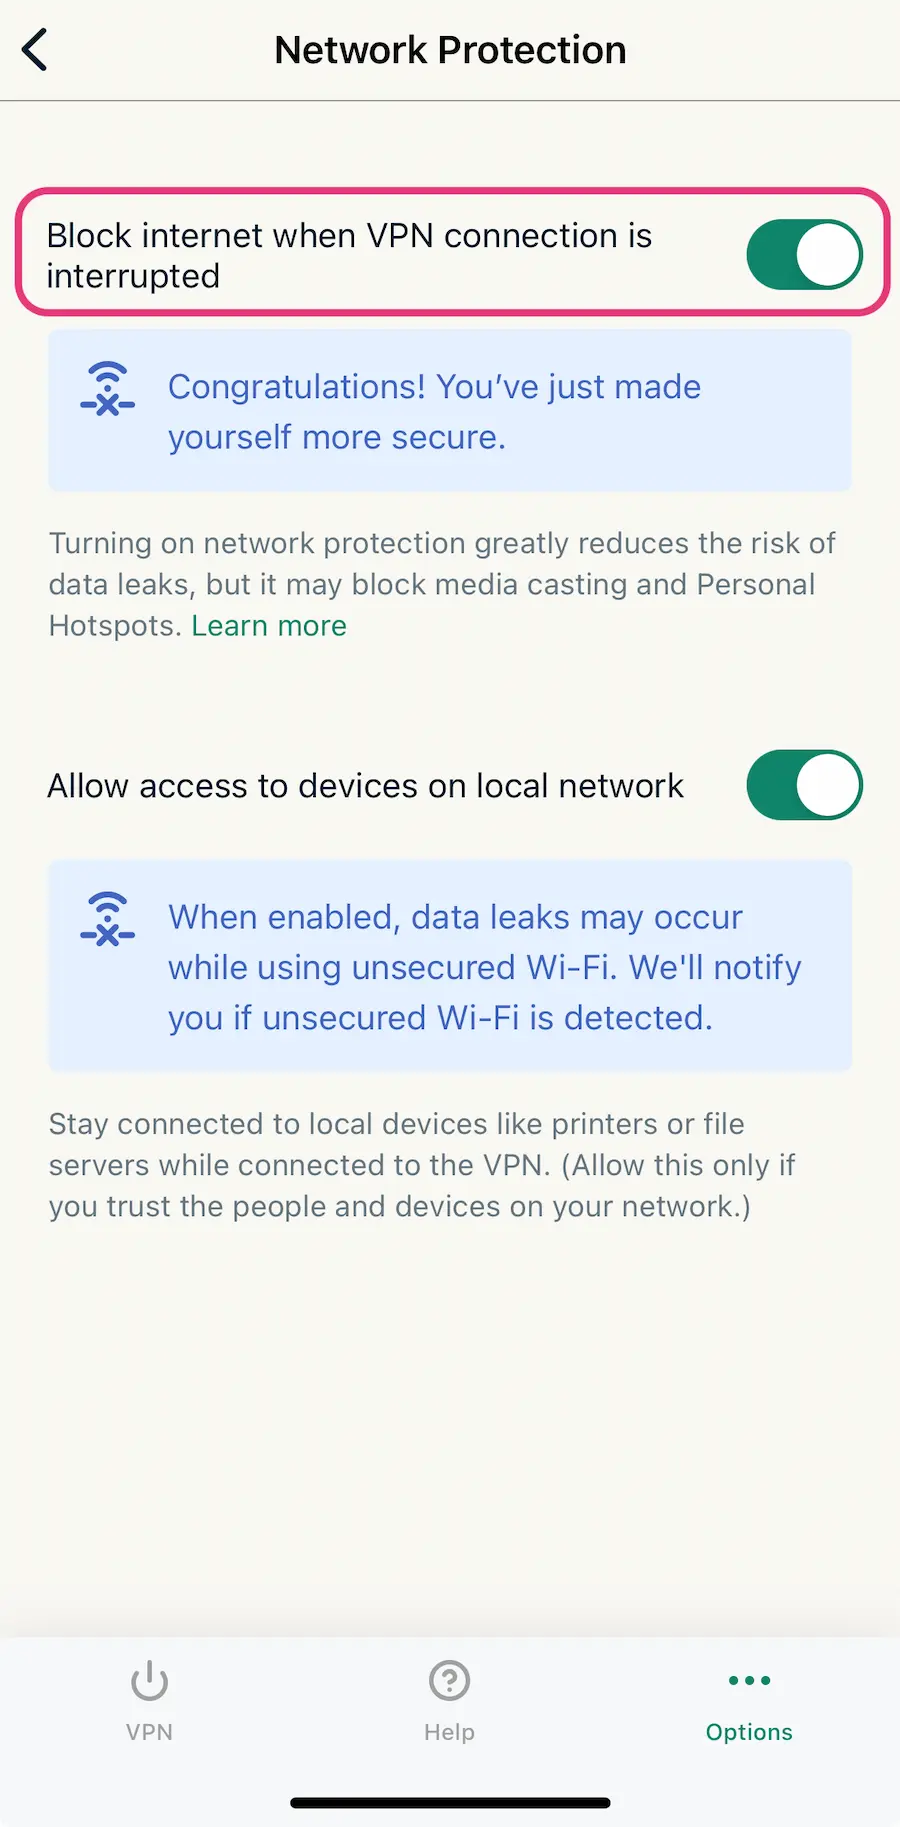 Configurações do aplicativo iOS da ExpressVPN. Dois botões de alternância são mostrados: “Bloquear internet quando a conexão VPN for interrompida”, que funciona como um kill switch, está habilitado e destacado.